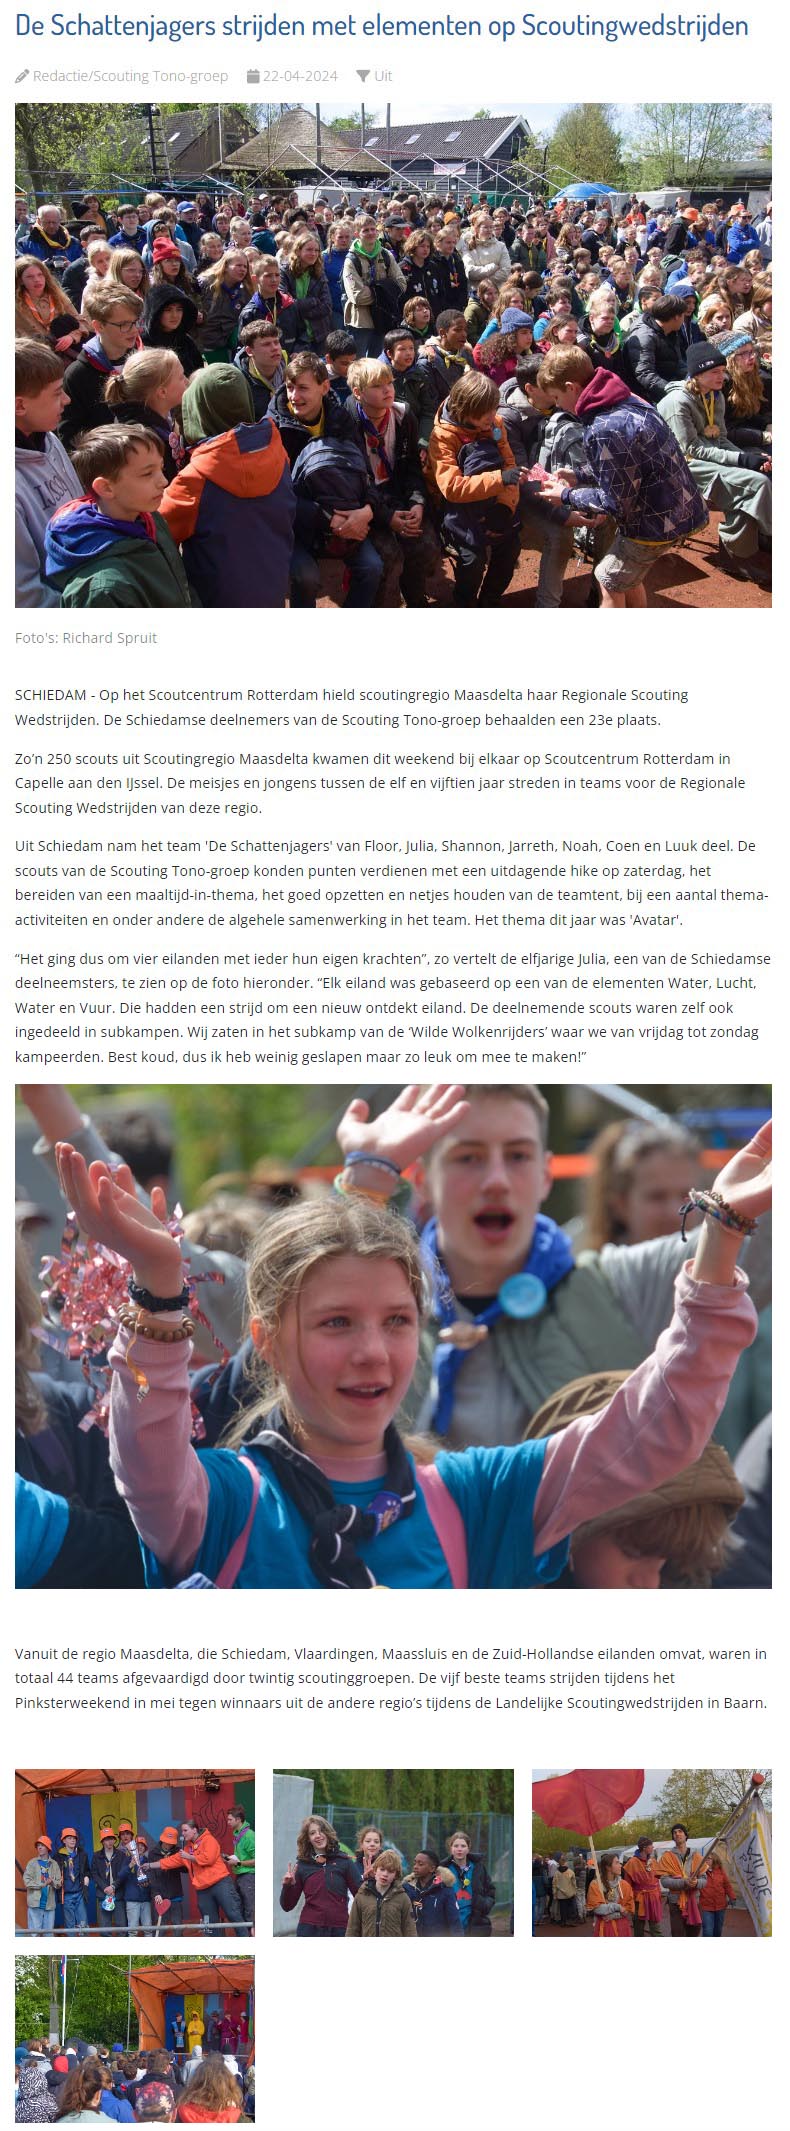 De deelname van de Schiedamse Scouting Tono-groep aan de Regionale Scouting Wedstrijden kwam ruim in het nieuws